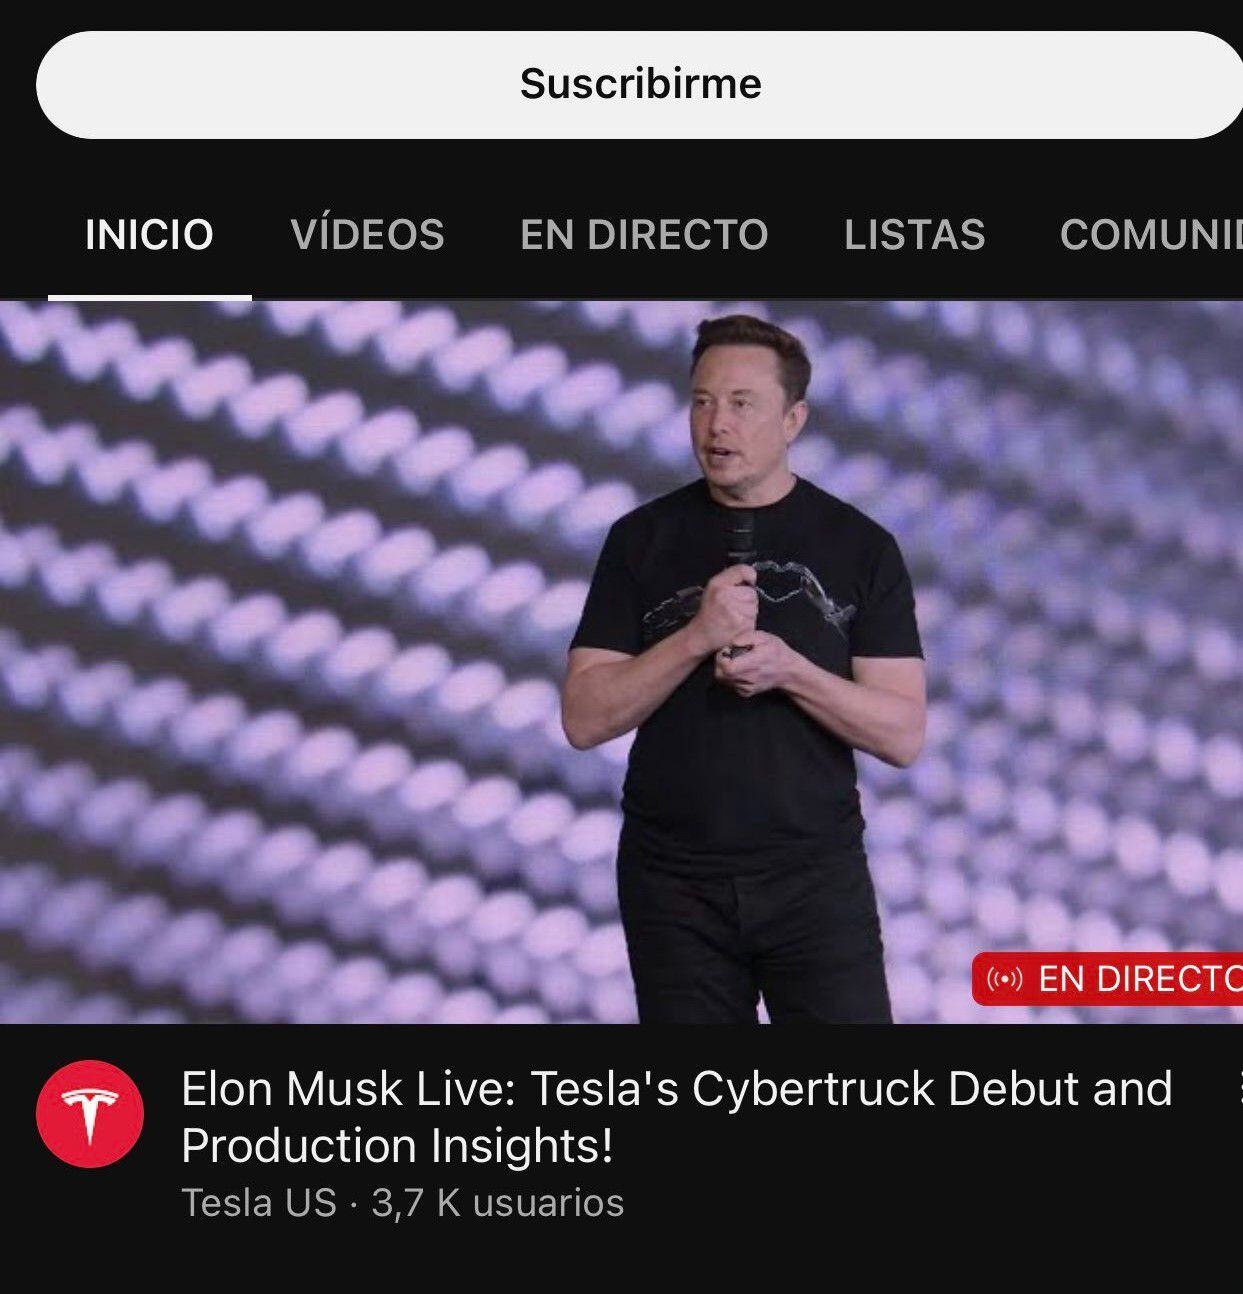 Cibercriminales estafan a usuarios en YouTube con videos falsos de Elon Musk en los que habla de criptomonedas. (Captura)